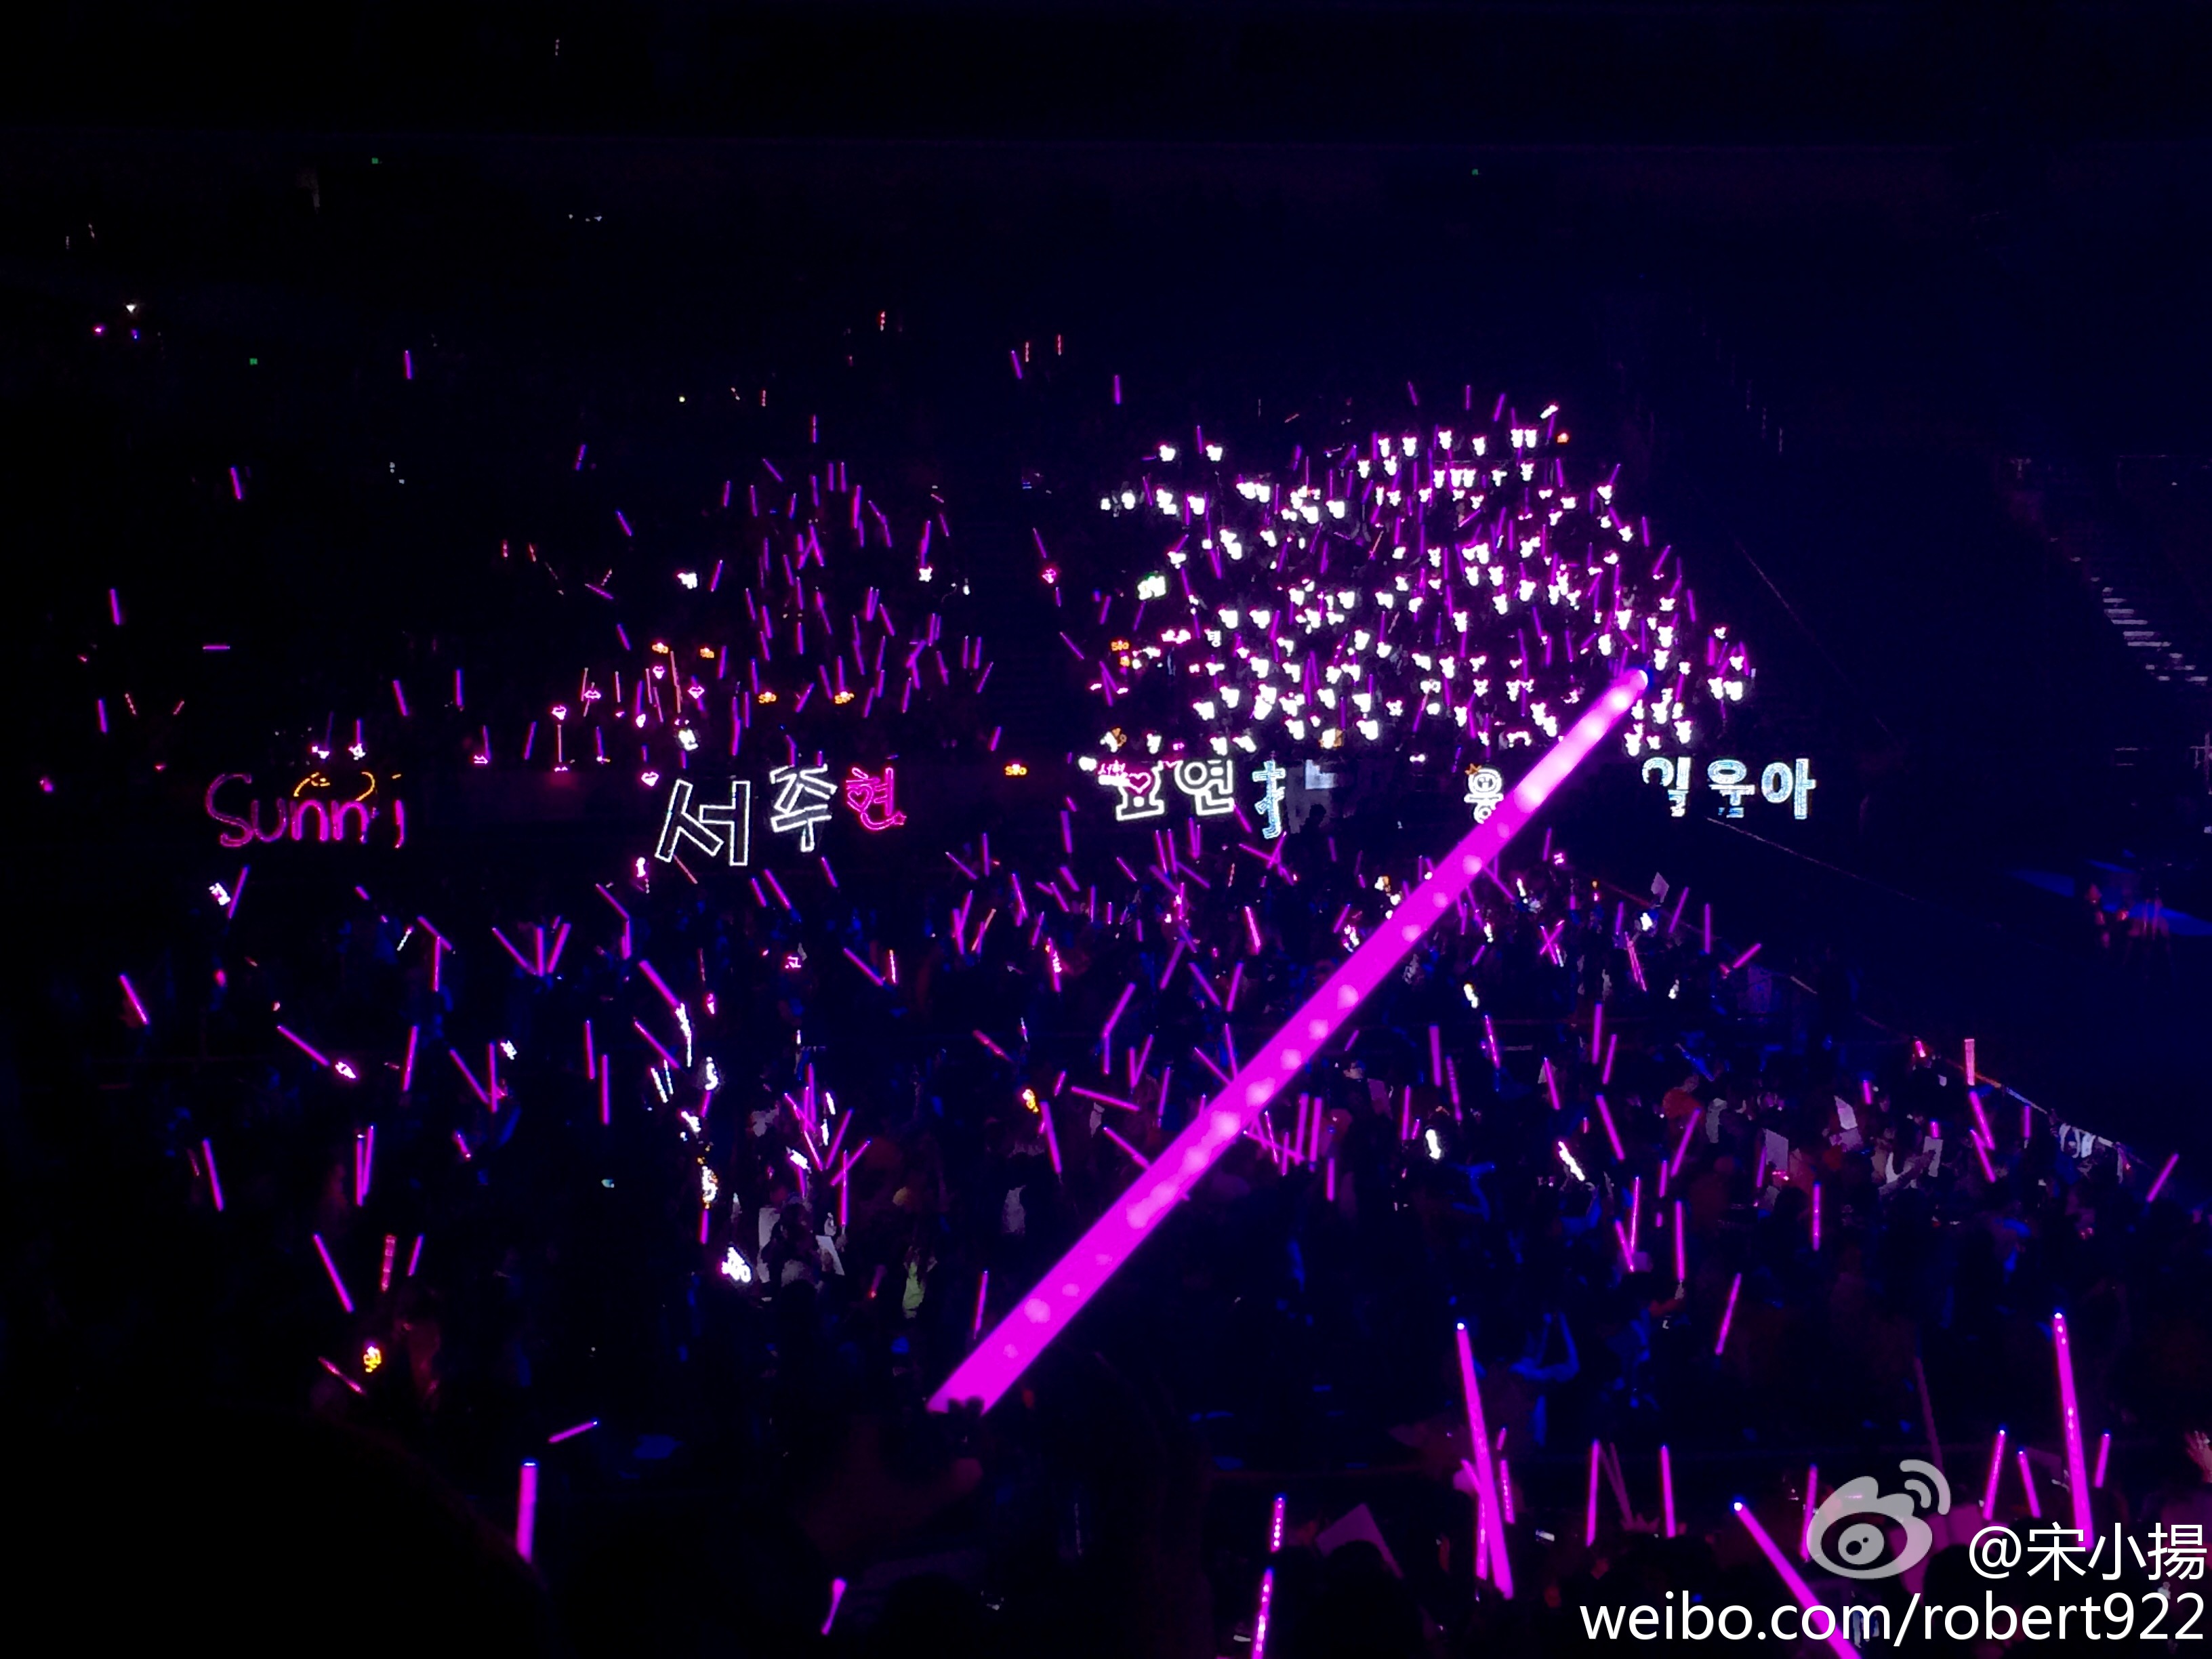 [PIC][29-11-2014]SNSD khởi hành đi Trung Quốc để tham dự "China for GG 1st Fan Party in Bejing" vào sáng nay - Page 5 40730cc9jw1ems3tiyuyhj22io1w04lx